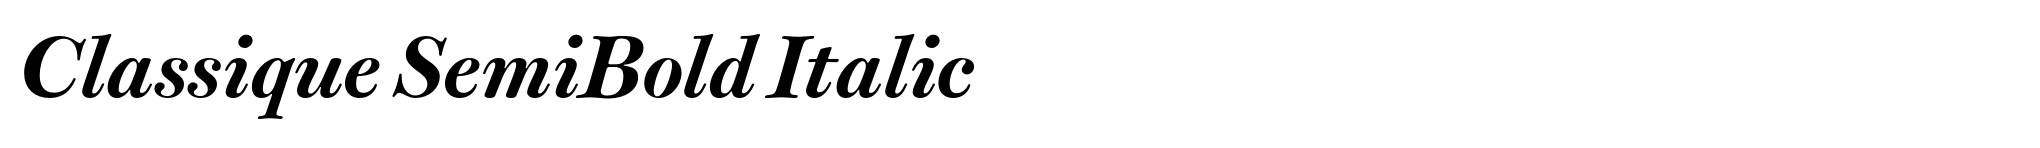 Classique SemiBold Italic image